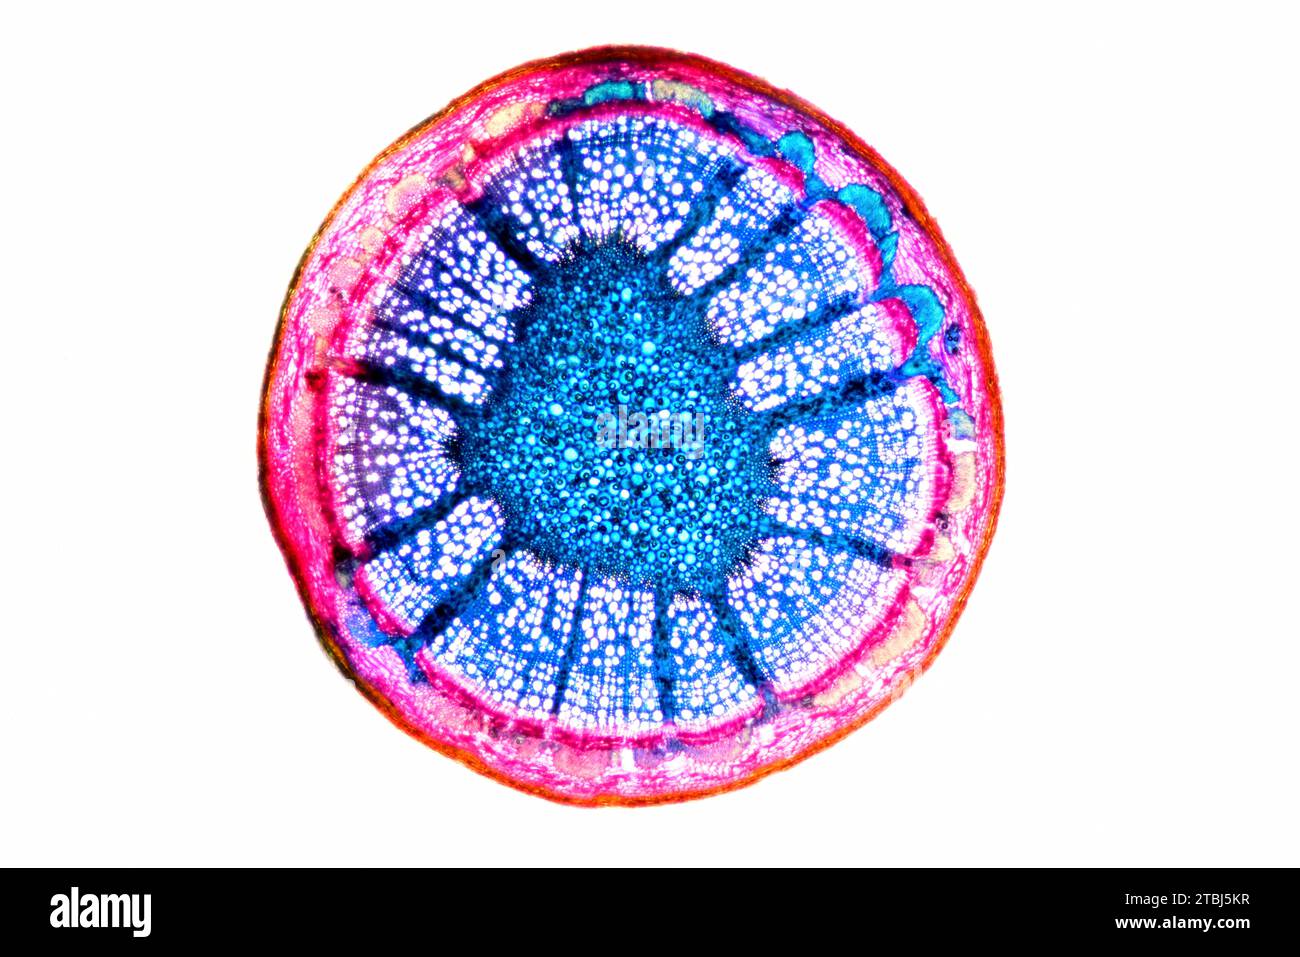 Stelo di Eudicot (Fagus sylvatica) che mostra epidermide, collenchima, corteccia, parenchima, pith, floem e xilem. Microscopio ottico X40. Foto Stock